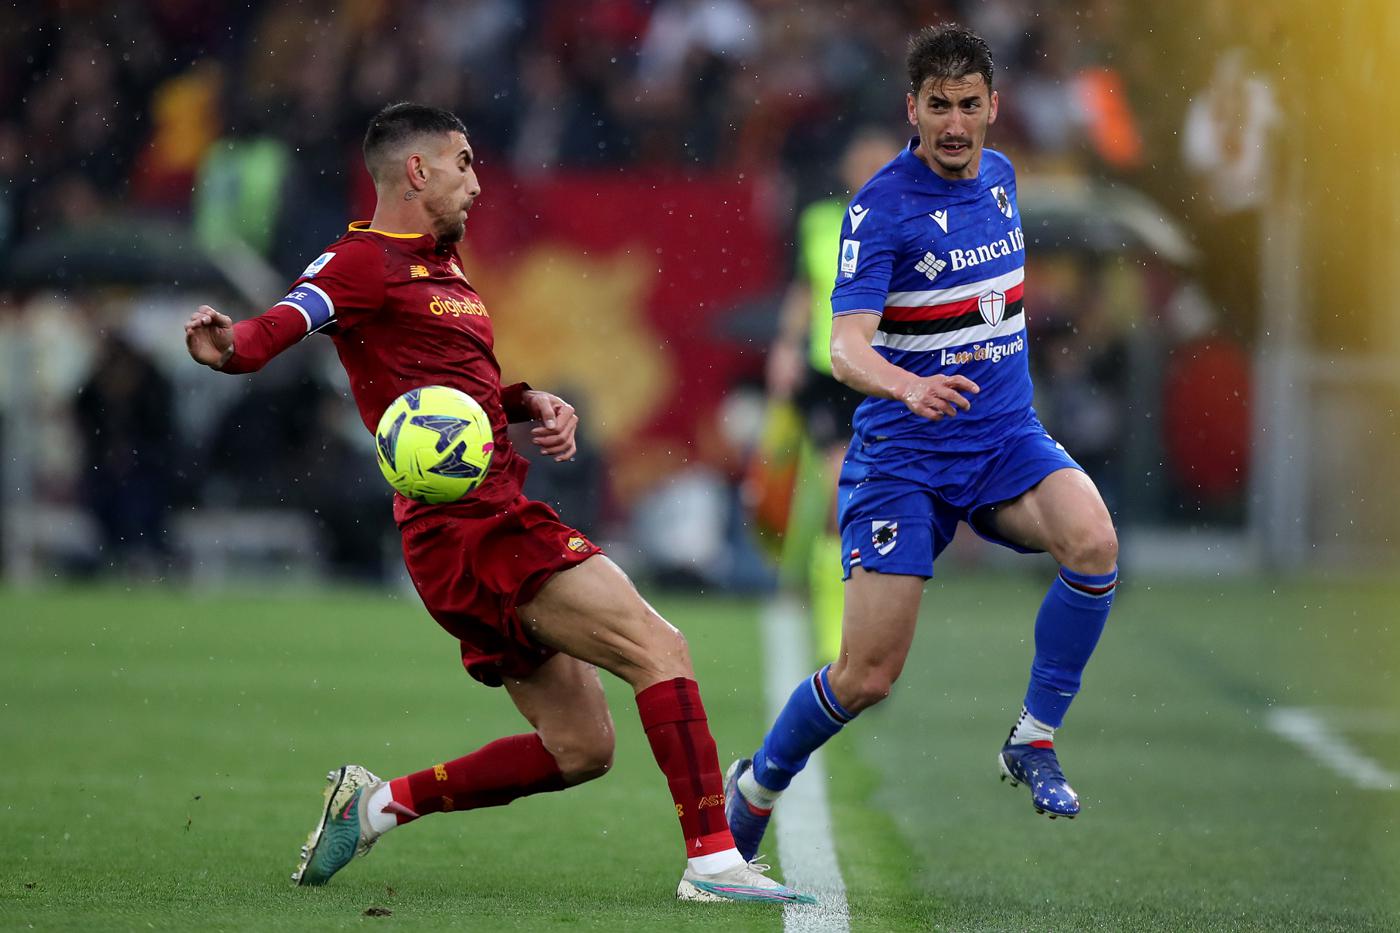 Roma - Sampdoria - 3:0. Italienische Meisterschaft, 28. Runde. Spielbericht, Statistiken